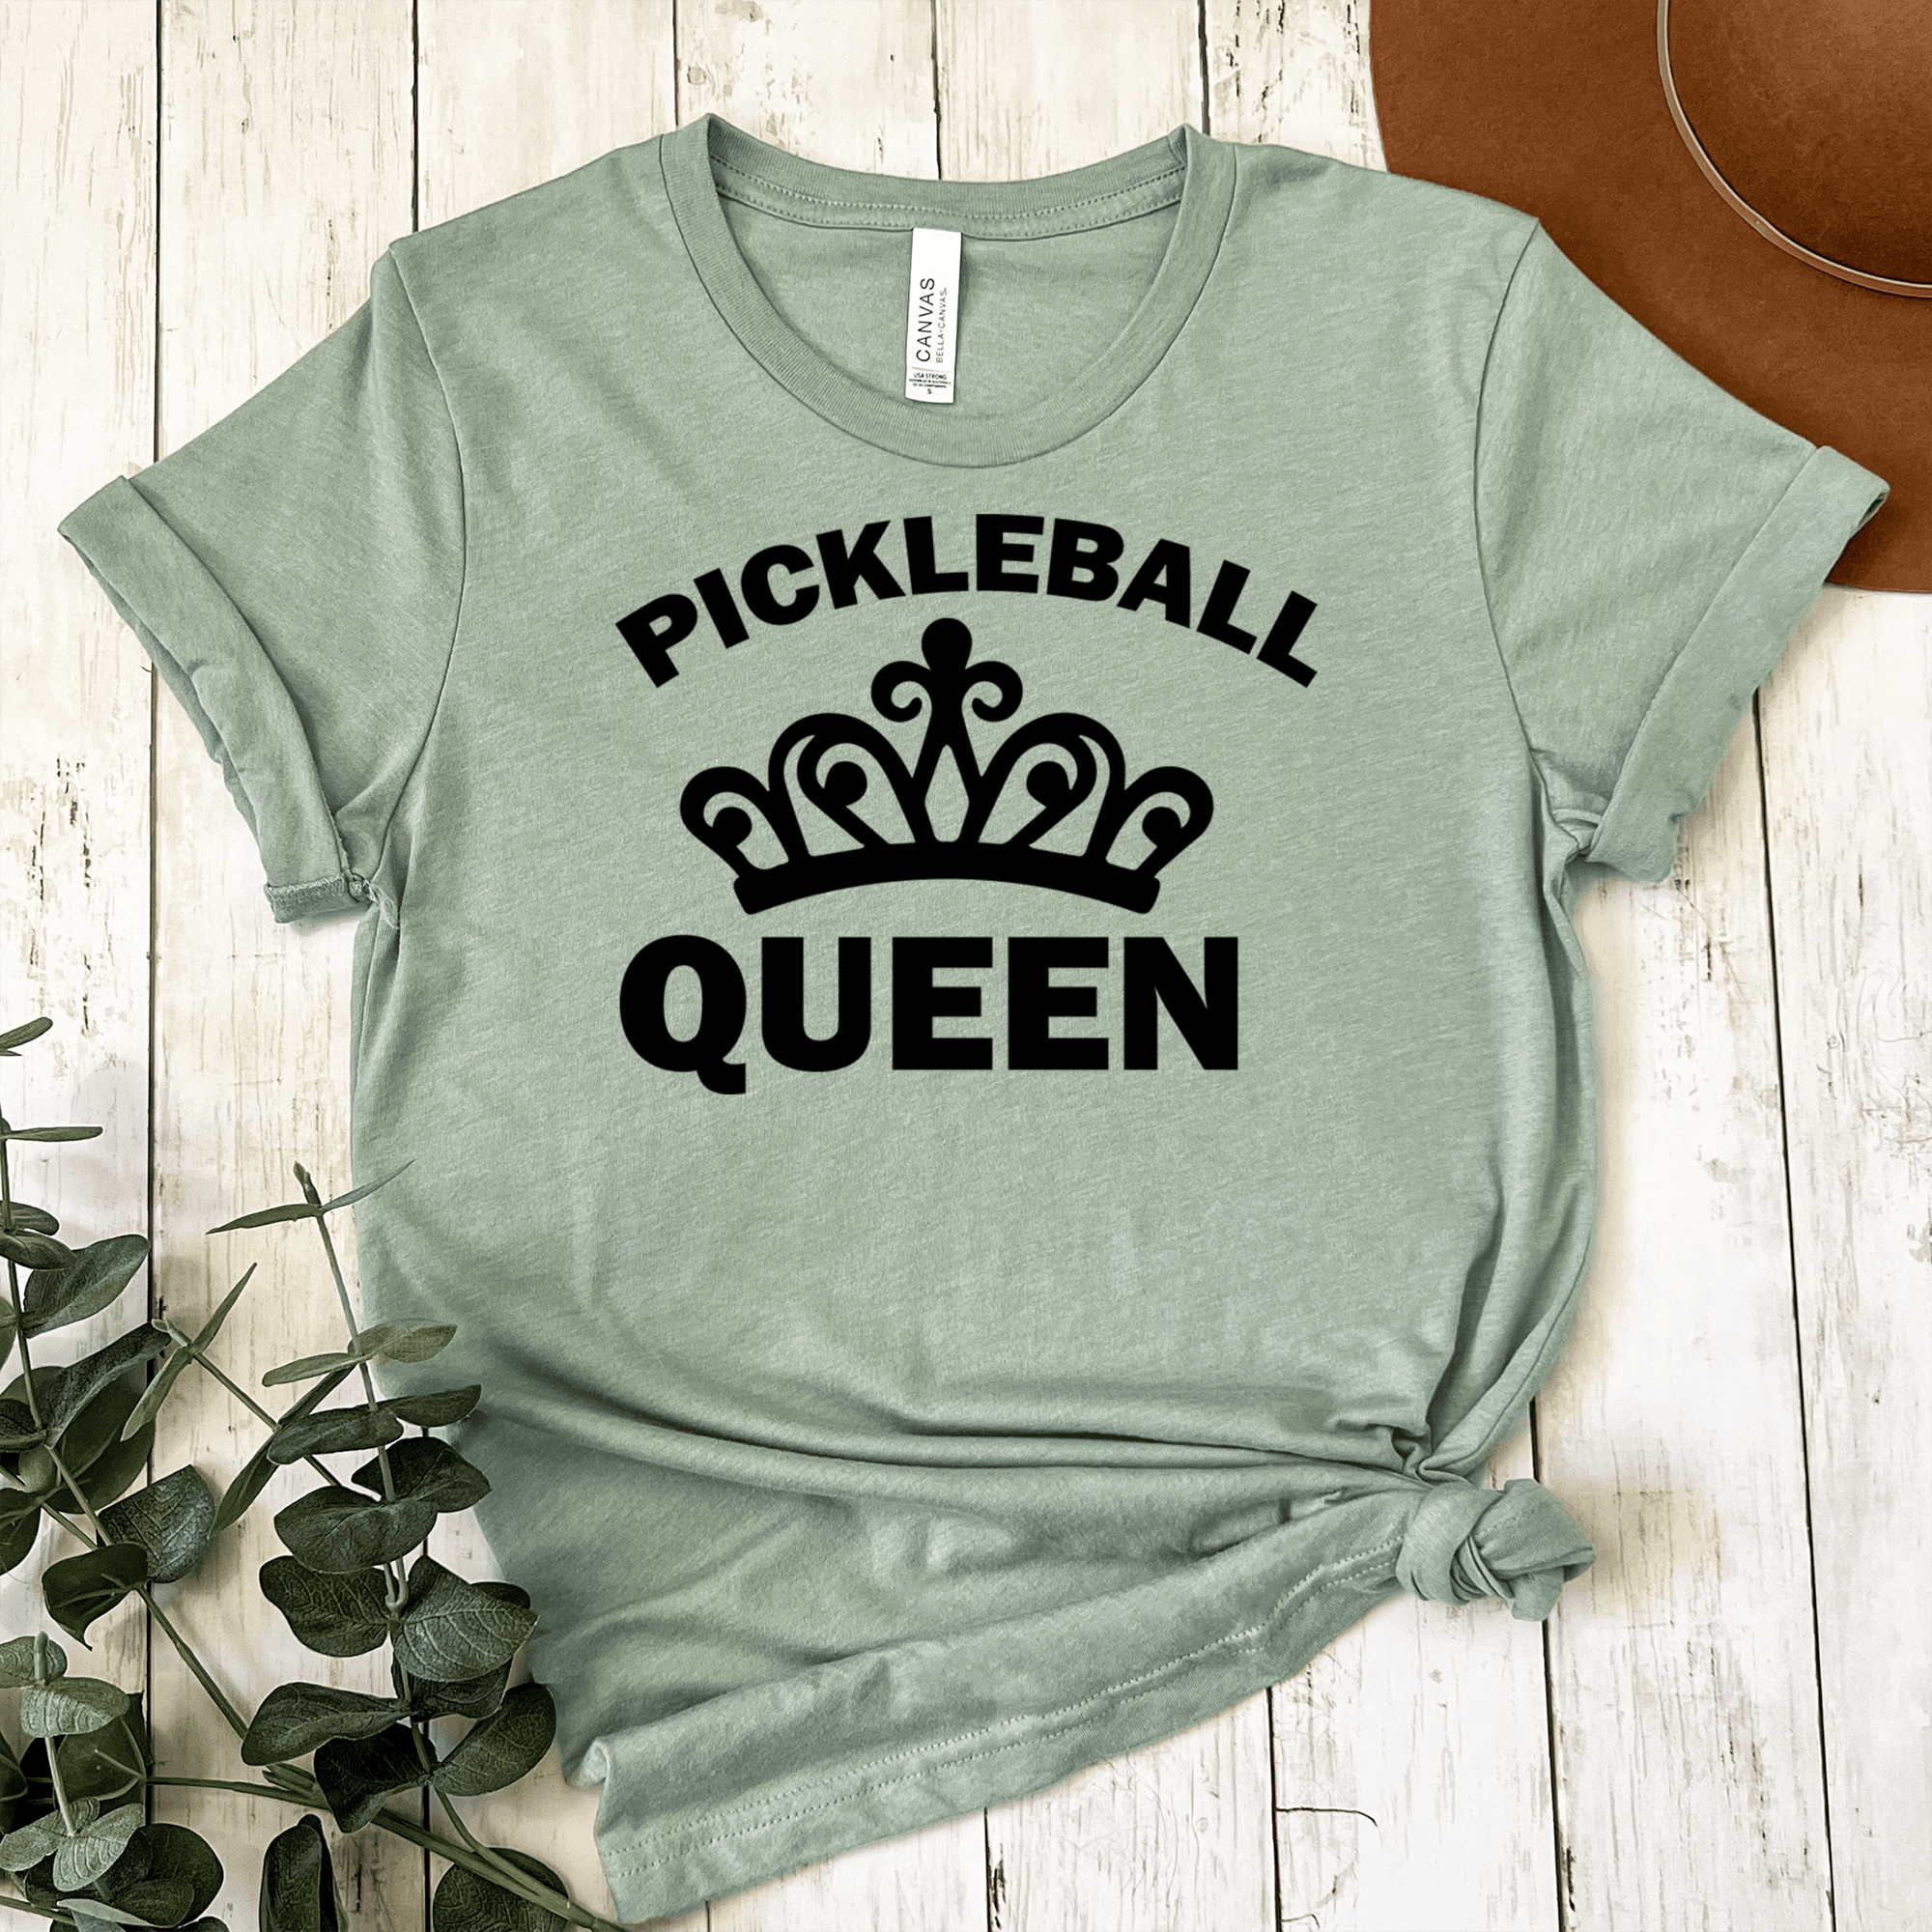 Womens Light Green T Shirt with The-Pickleball-Queen design